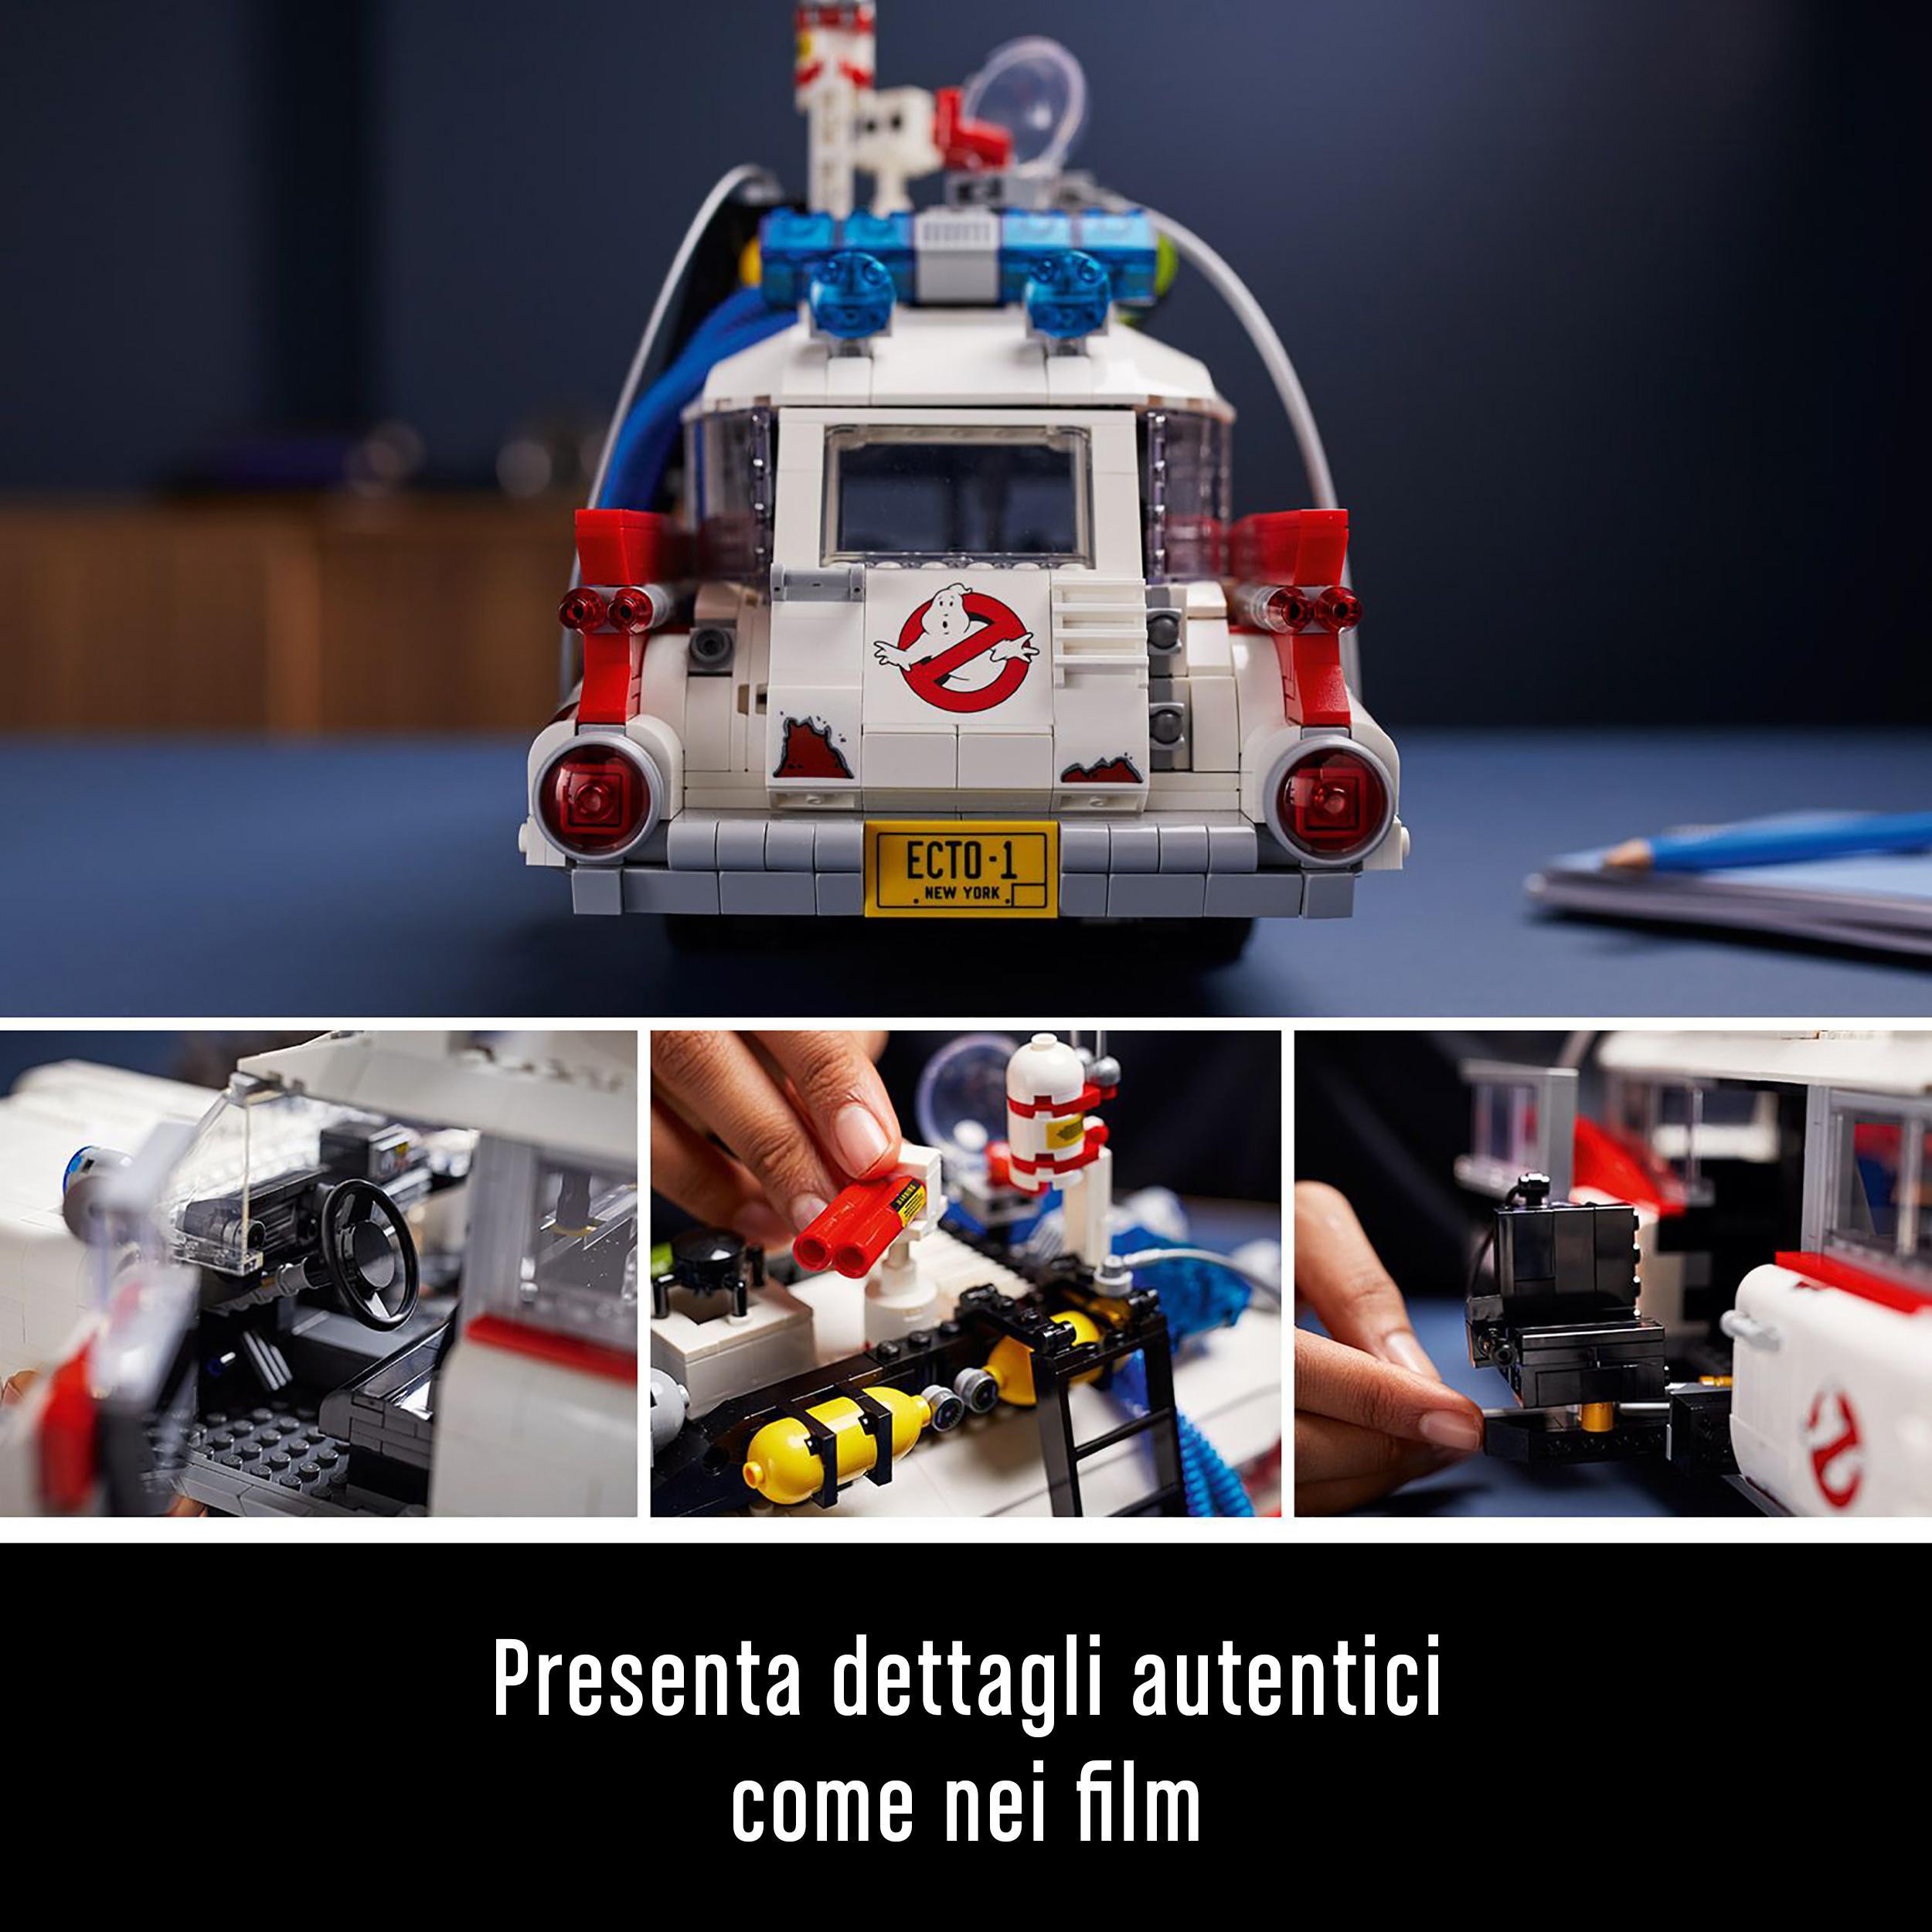 Lego icons 10274 ecto-1 ghostbusters, modellino da costruire, kit auto per adulti, modello da collezione, idea regalo - Lego, LEGO ICONS